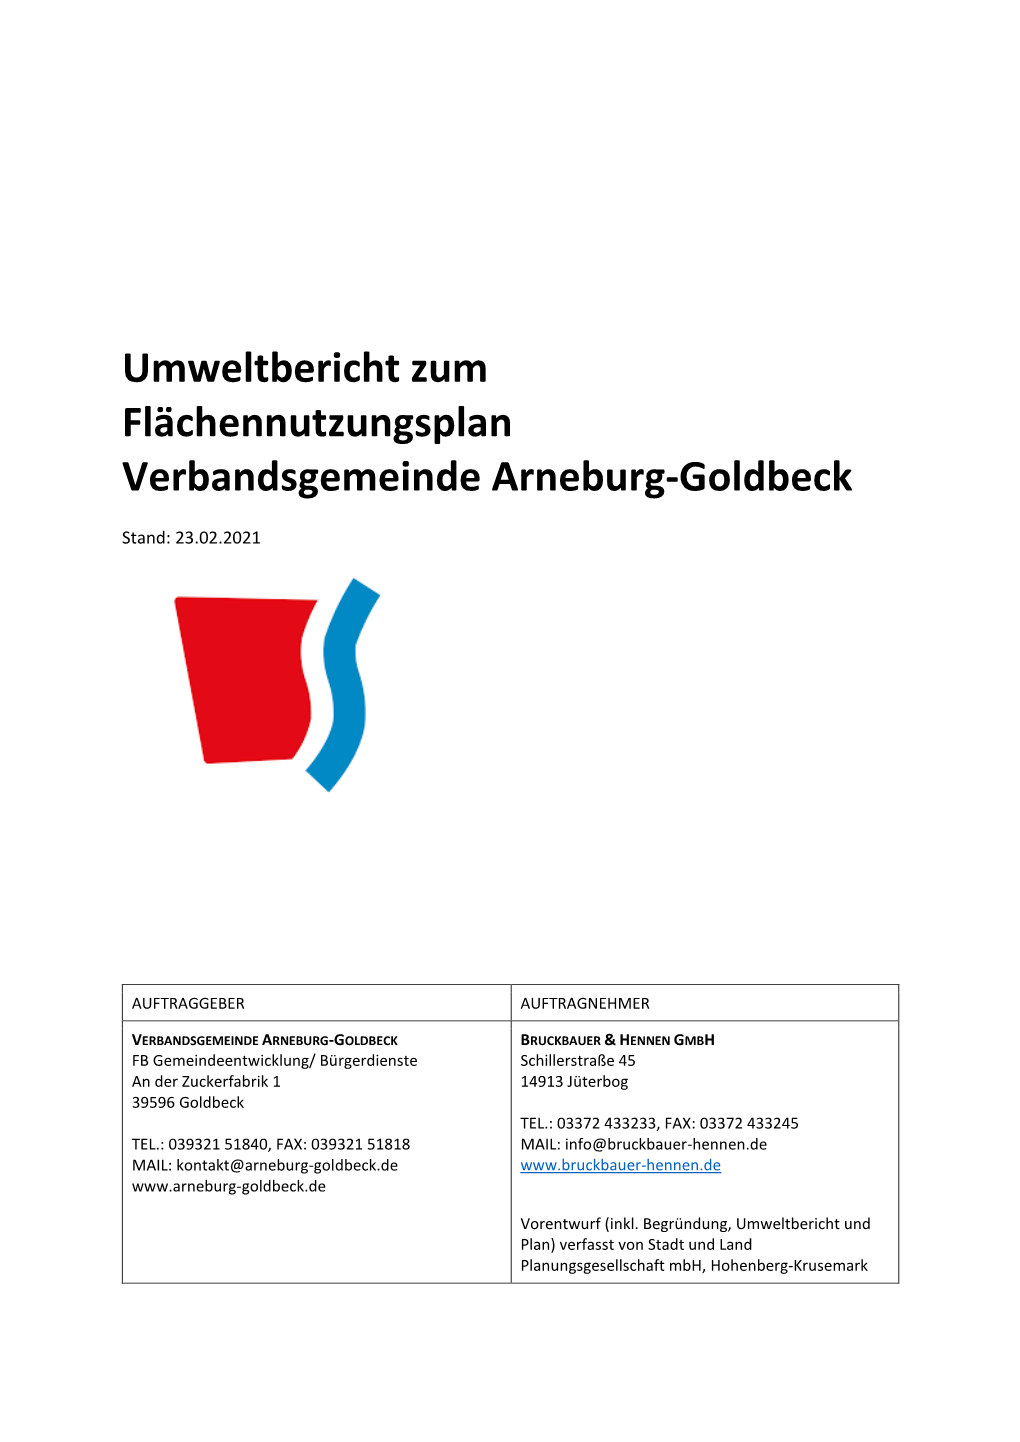 Umweltbericht Zum Flächennutzungsplan Verbandsgemeinde Arneburg-Goldbeck